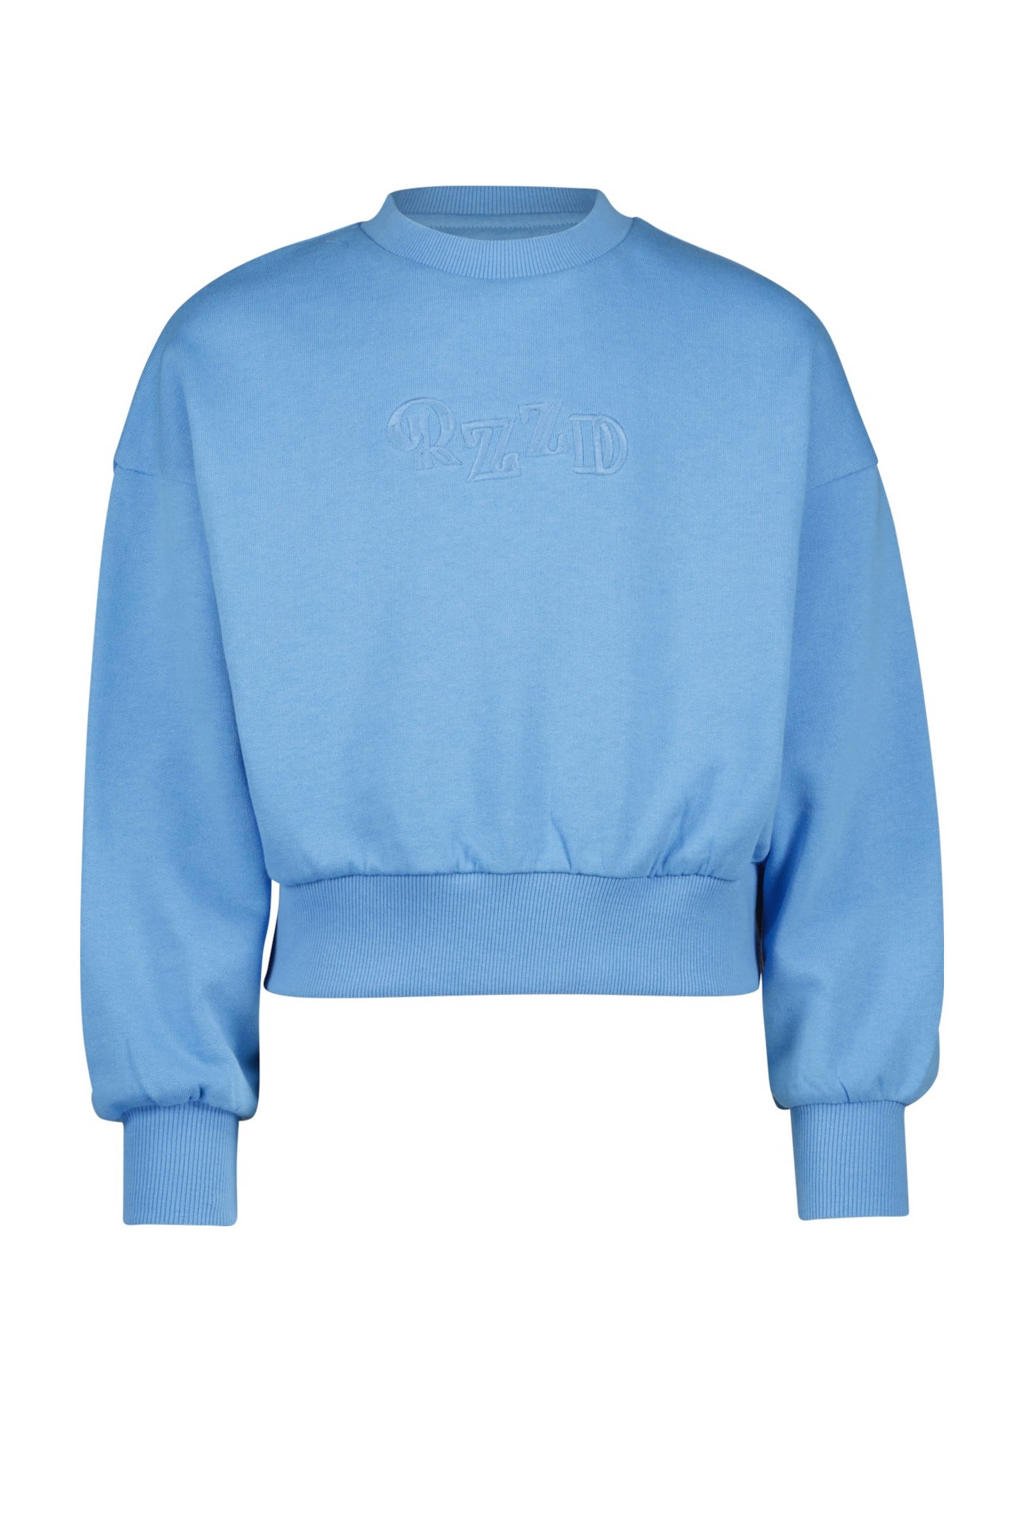 Blauwe meisjes Raizzed sweater van katoen met lange mouwen en ronde hals